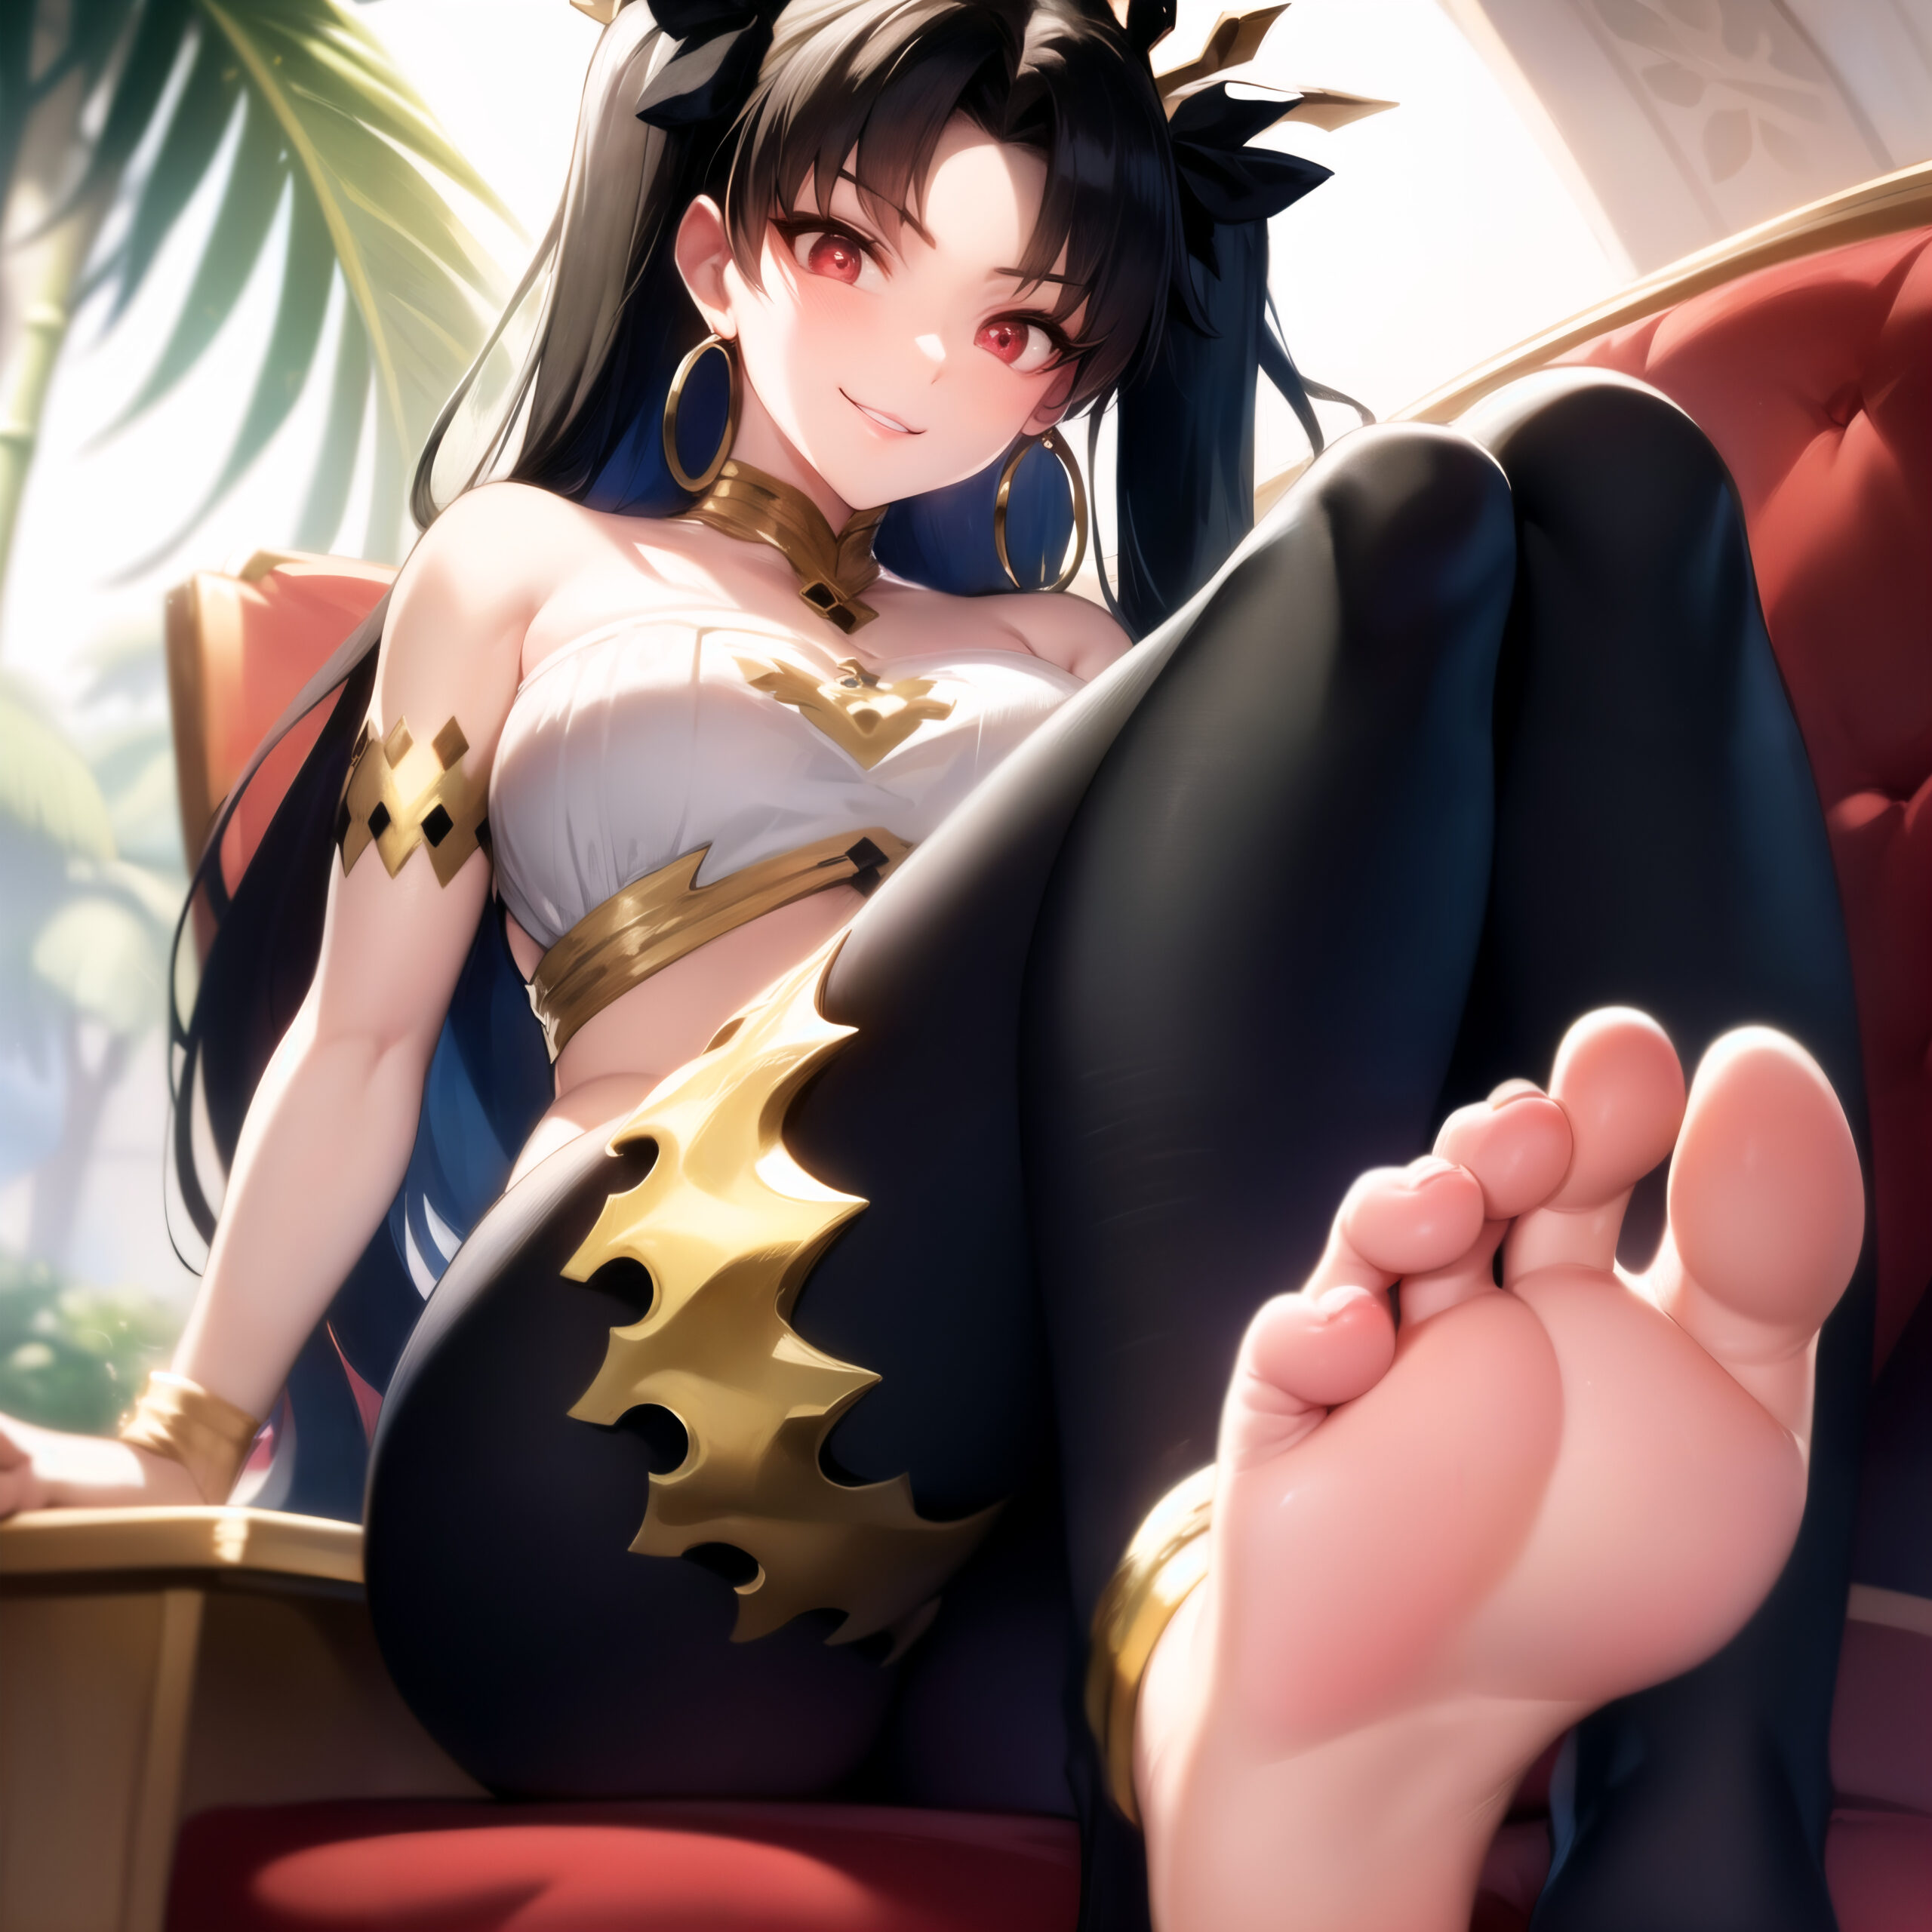 Anime feet rule 34